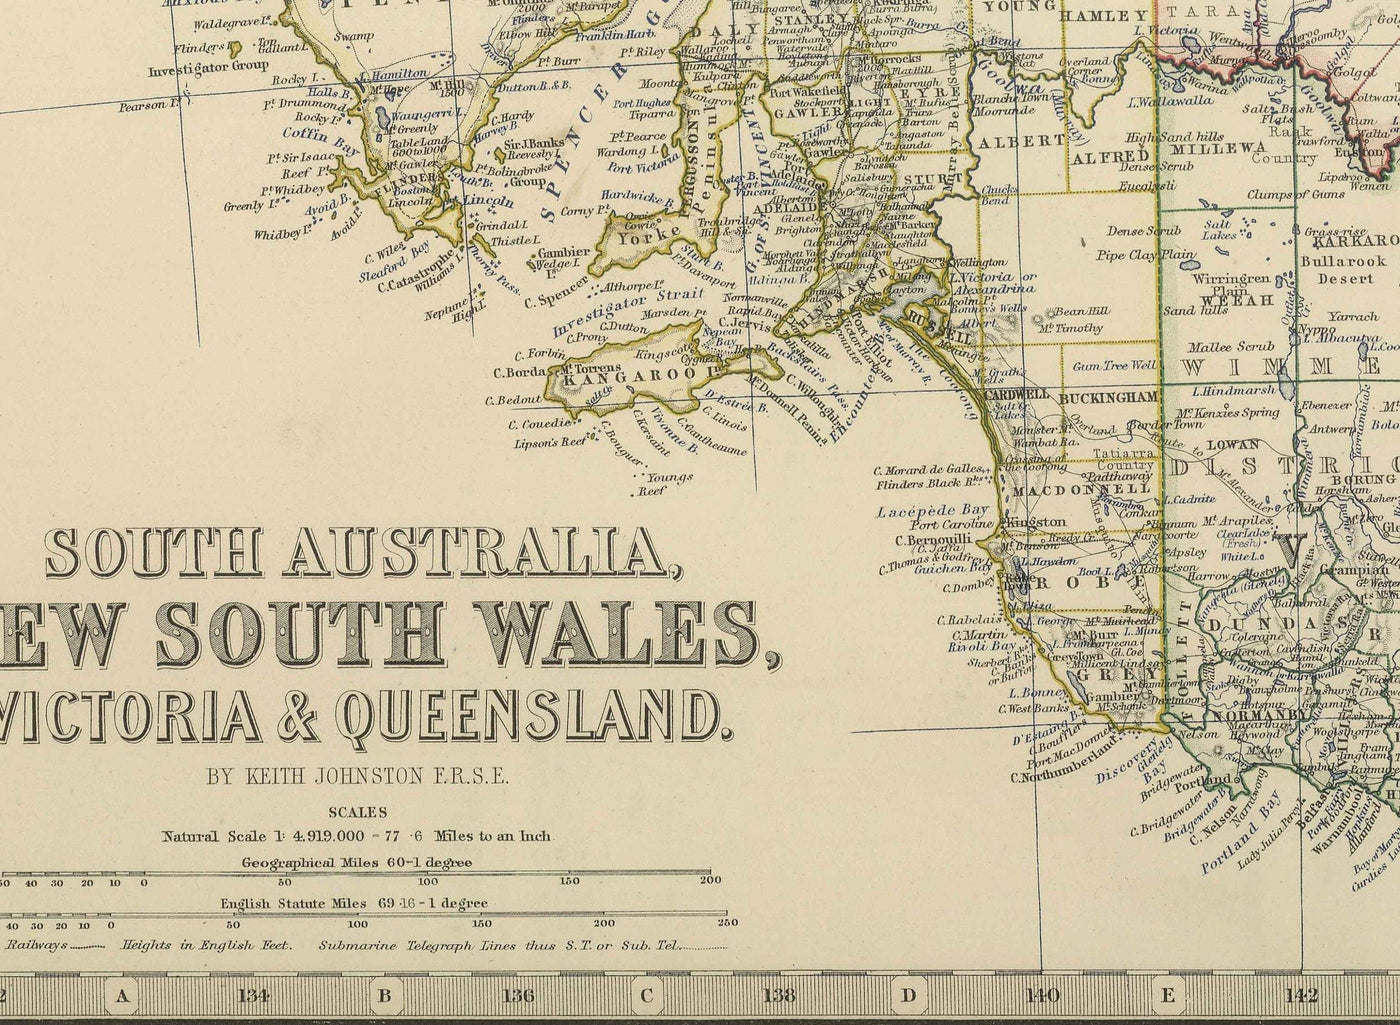 Antiguo mapa de Australia Oriental, 1879 - Primeras colonias británicas de Nueva Gales del Sur, Victoria, Queensland y Australia Meridional